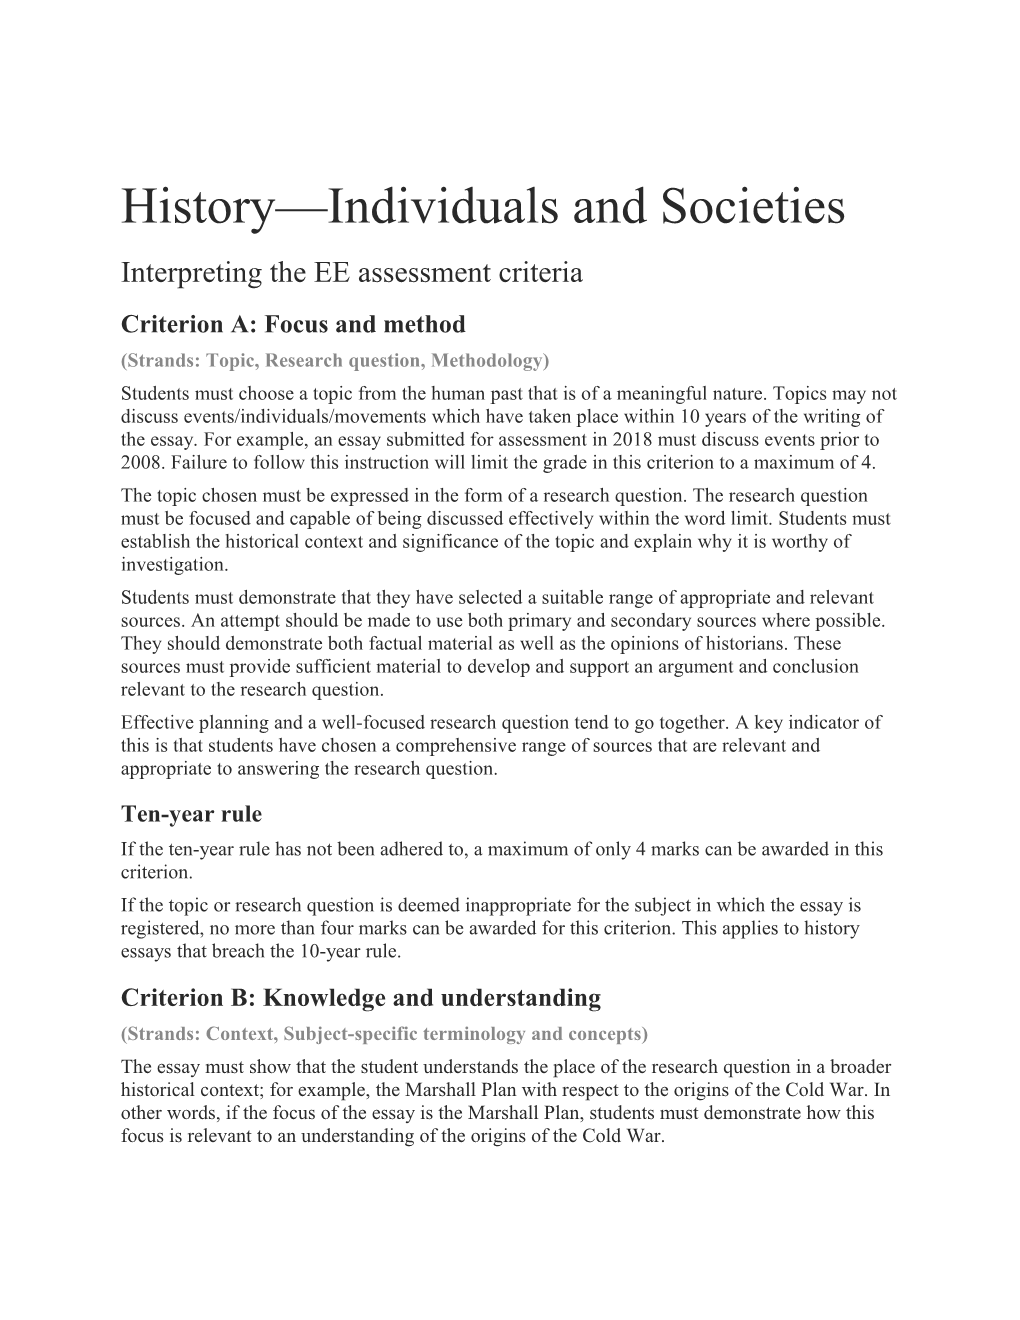 History Individuals and Societies